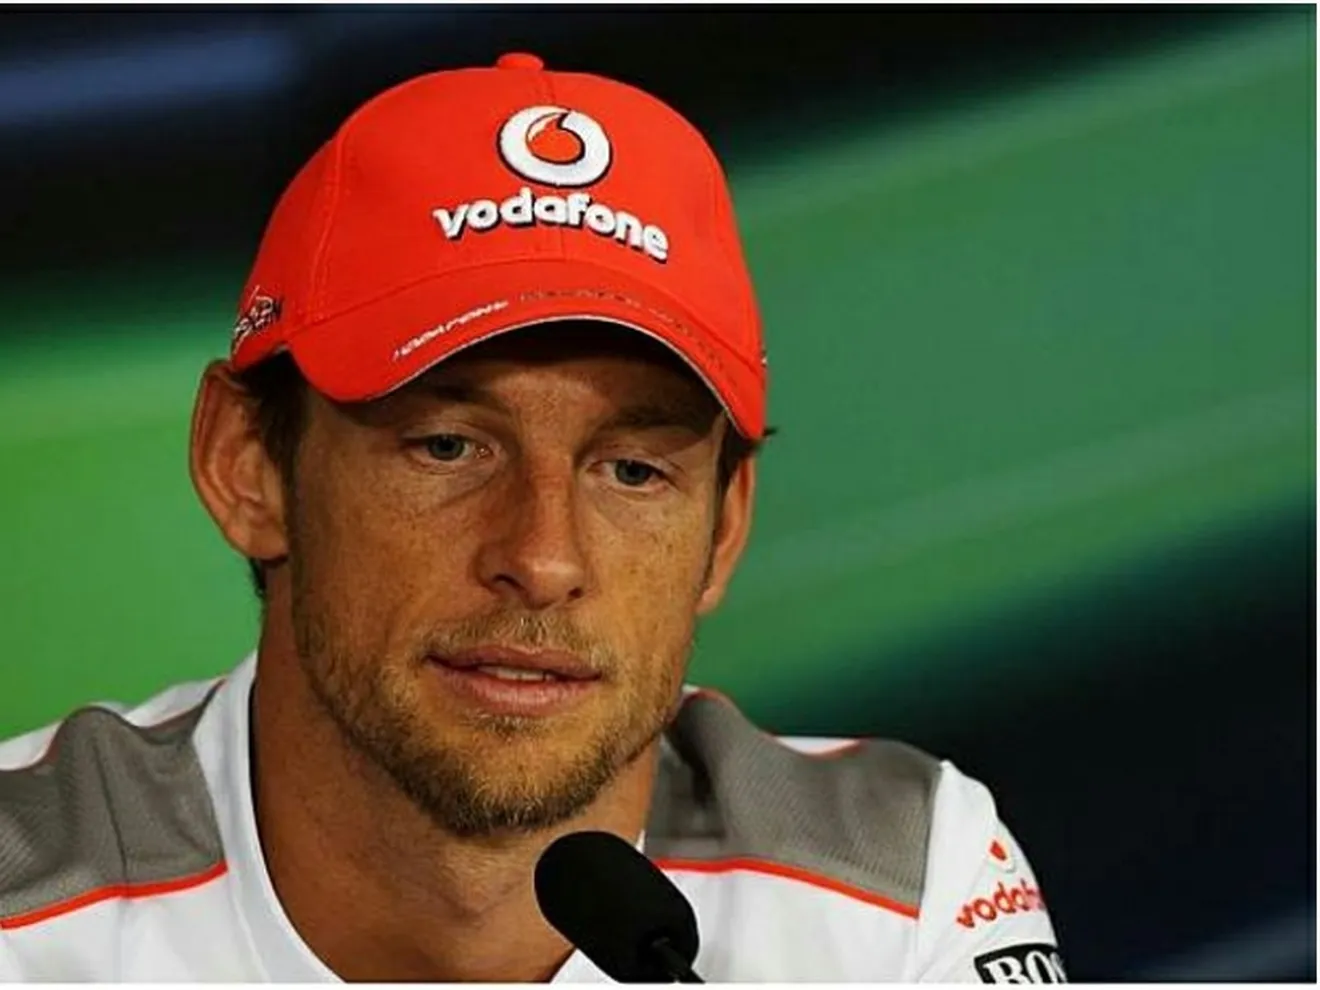 ¿Qué le pasa a Jenson Button?